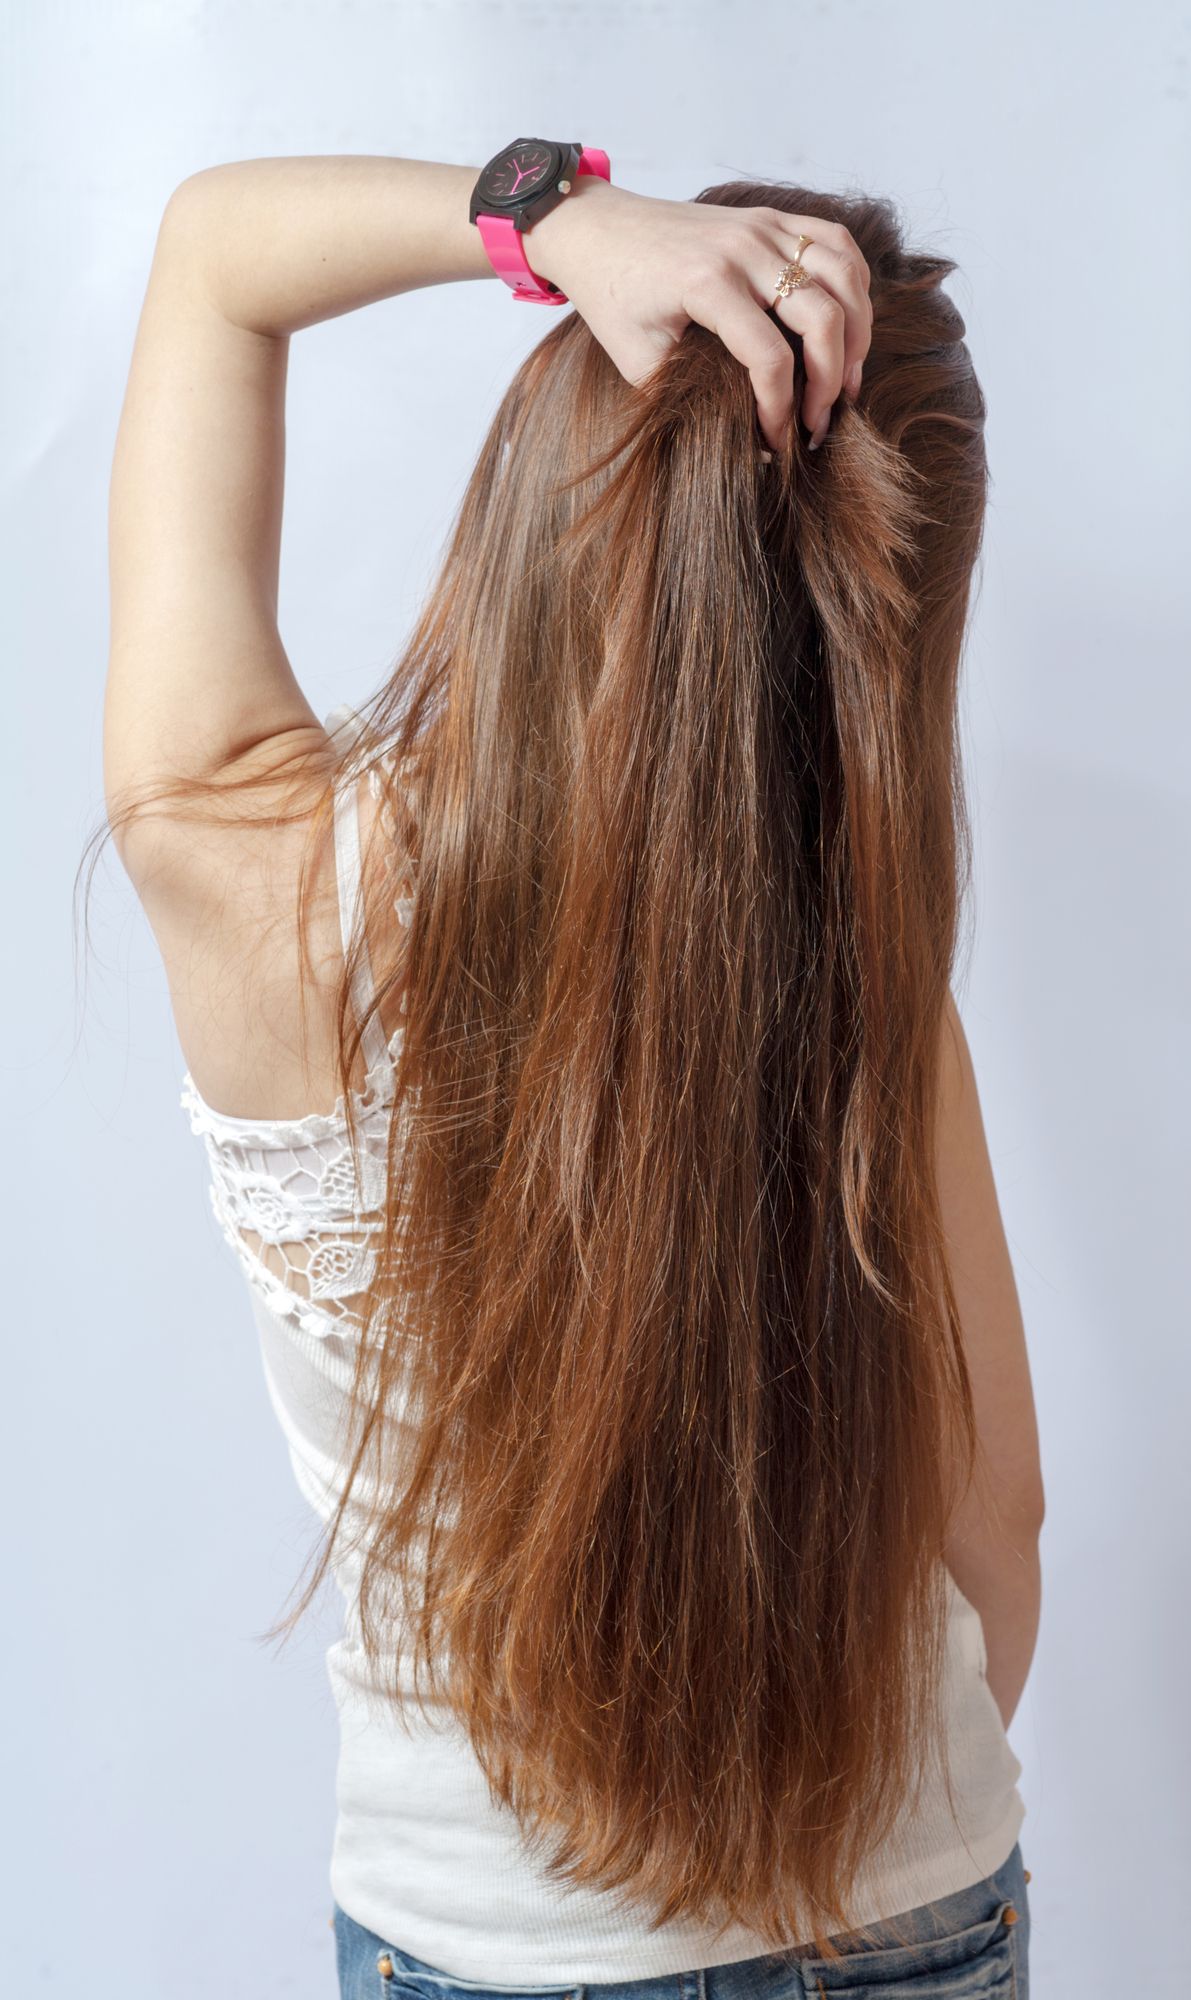 ⁨‎⁨شامبو لوريال واحداً من بين المنتجات المعالجة لمشكلة تساقط الشعر⁩⁩